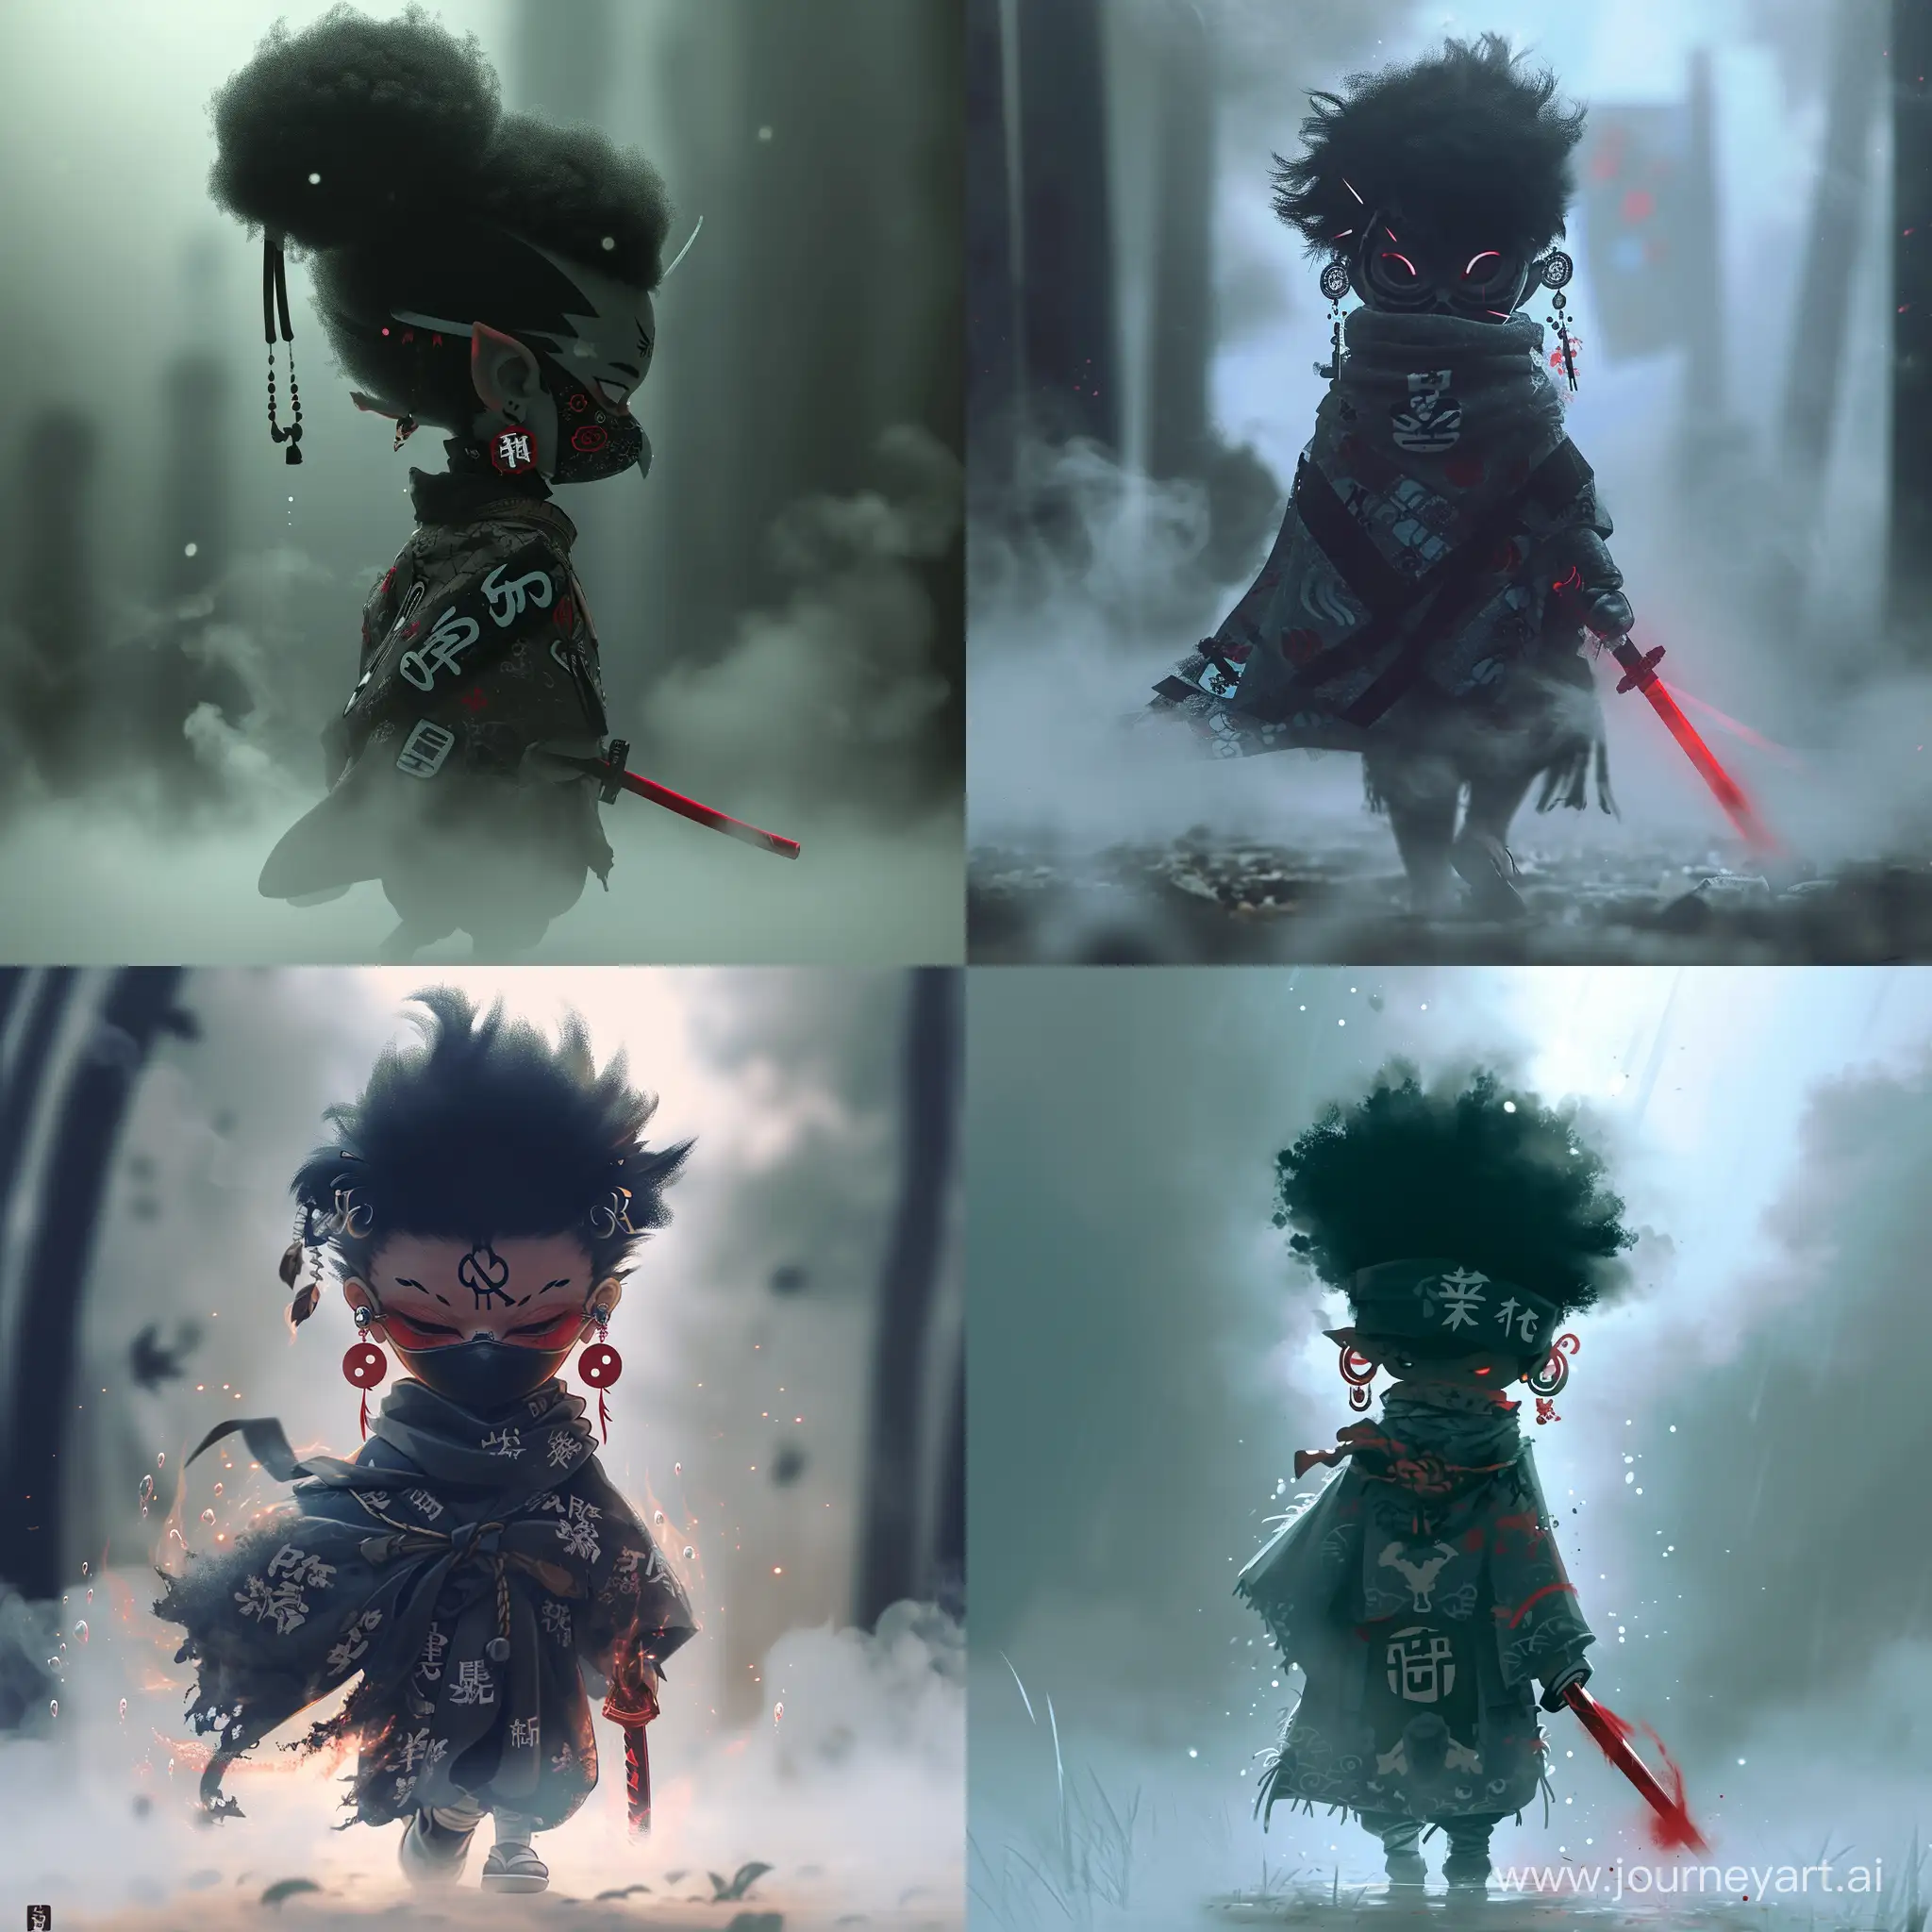 Mystical-Anime-Boy-Wielding-Crimson-Sword-in-Enchanting-Fog